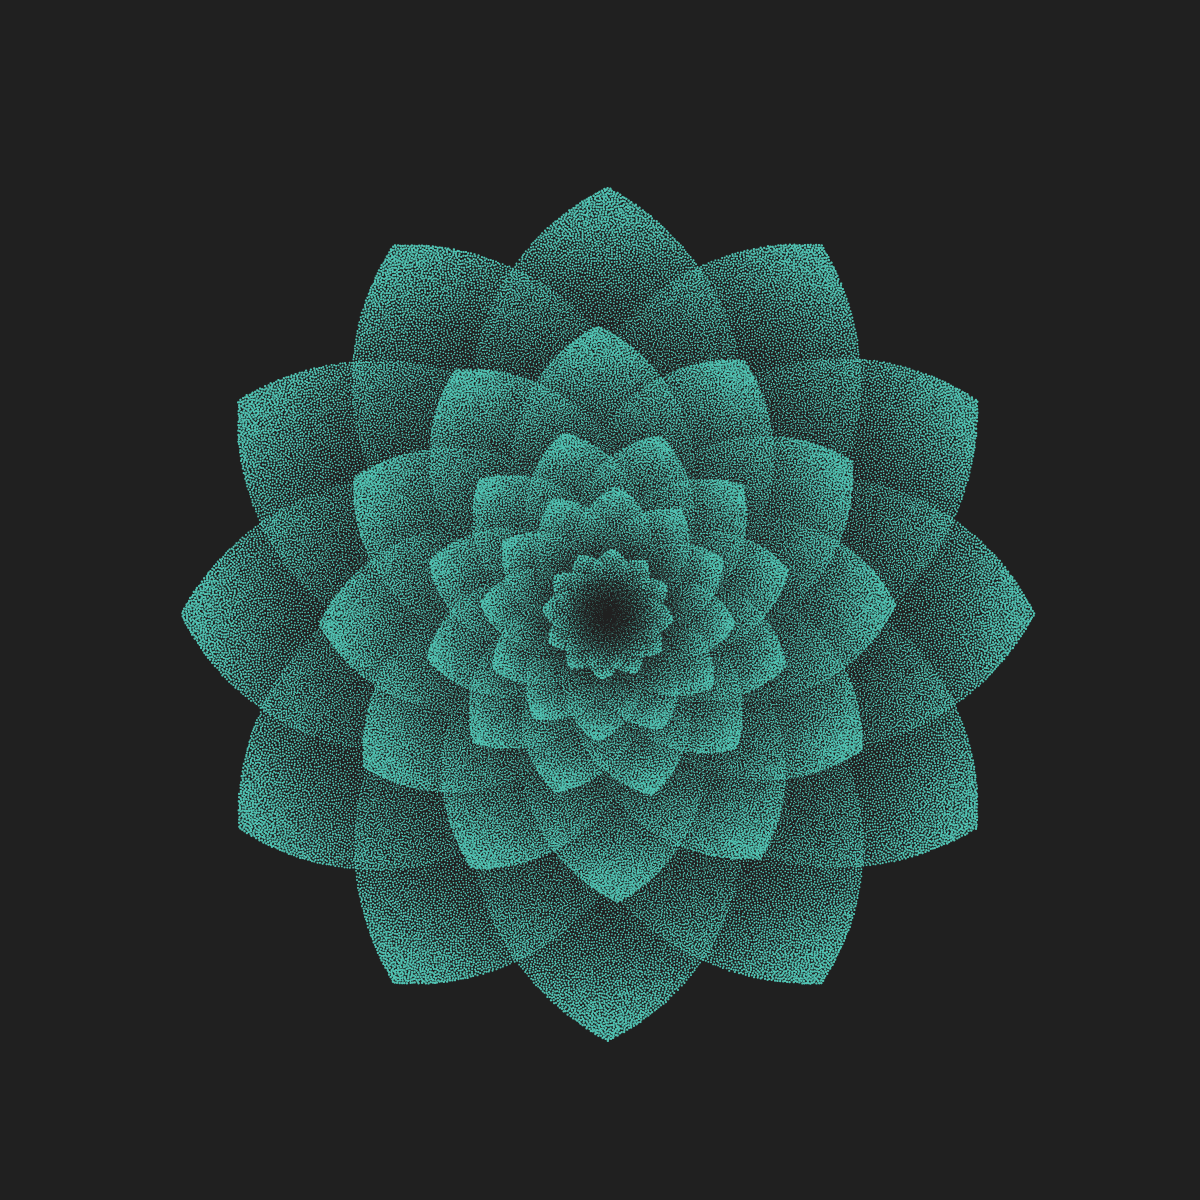 Create a fractal stipple flower in Illustrator